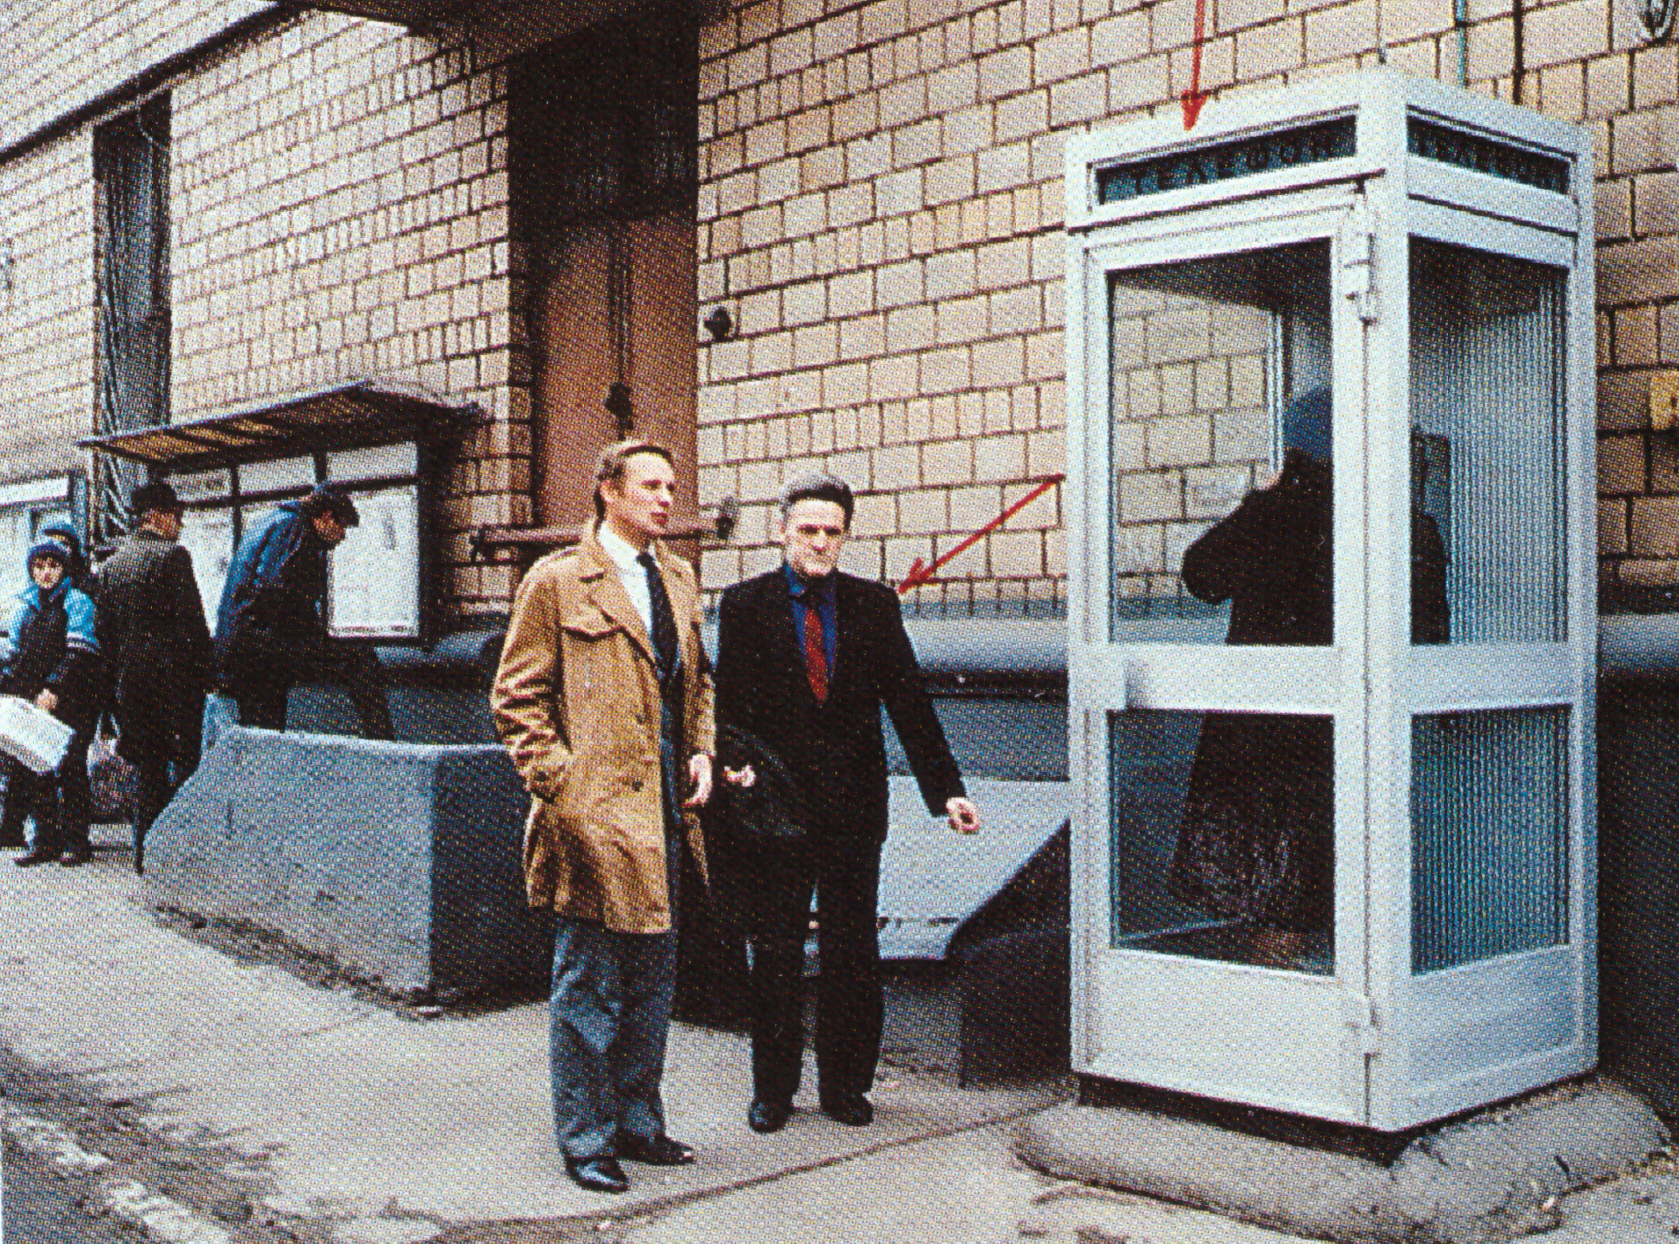 Адольф Толкачёв указывает сотрудникам КГБ телефонную будку в Трёхгорном переулке, где им были получены первые инструкции от ЦРУ